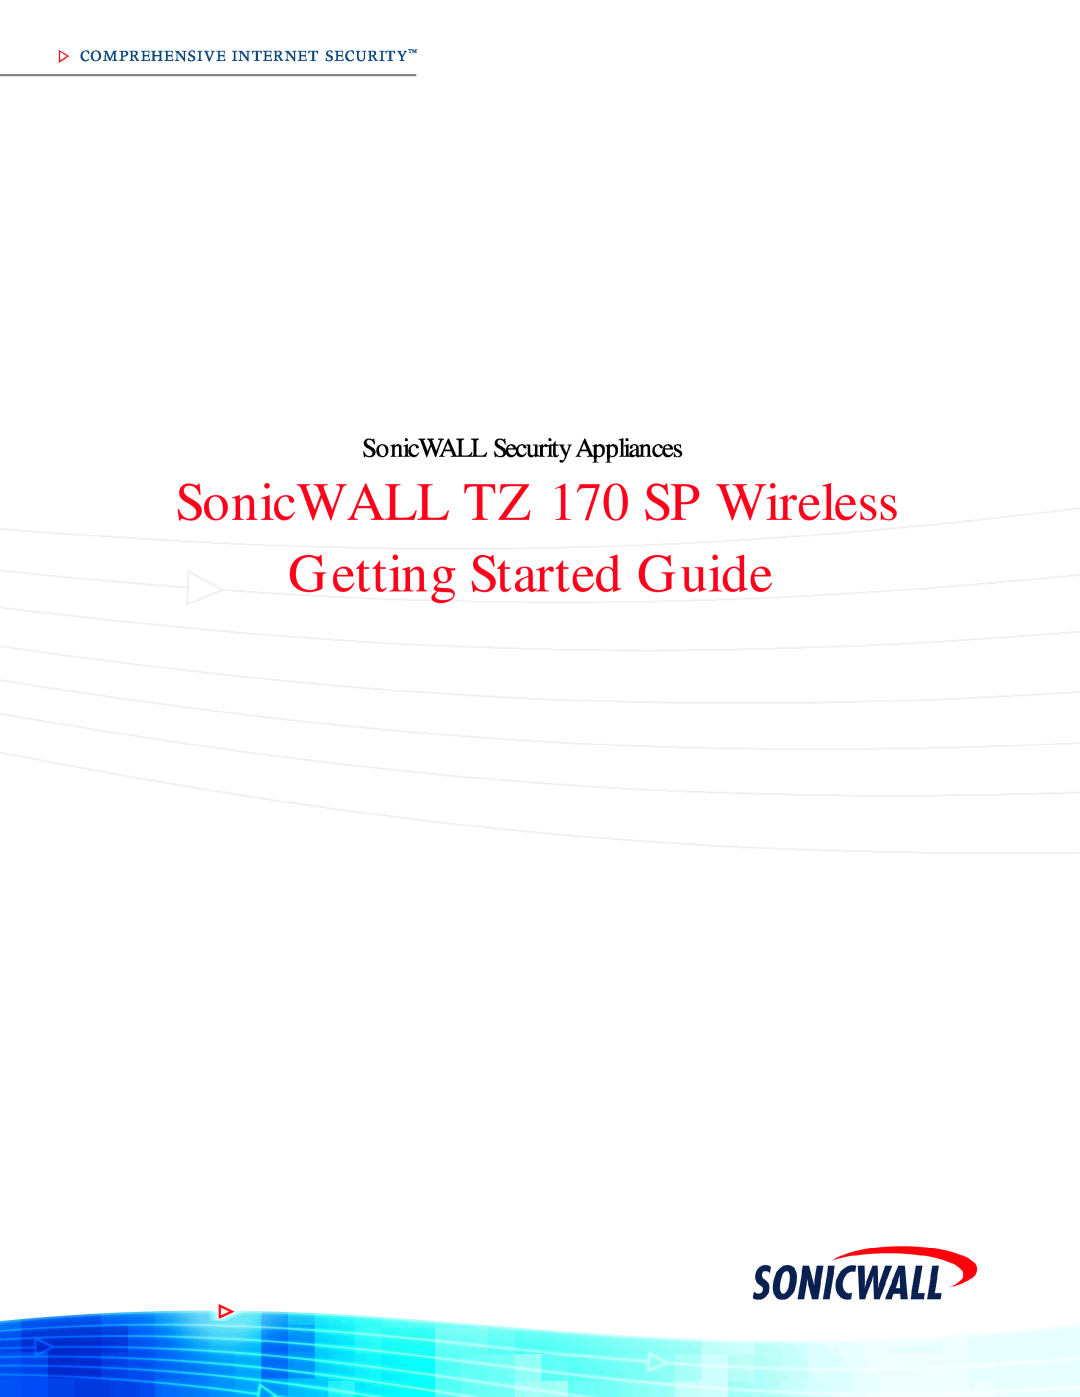 SonicWALL manual SonicWALL TZ 170 SP Wireless, Getting Started Guide, SSSSSSSSSSSSSSonicWALL Security Appliances 